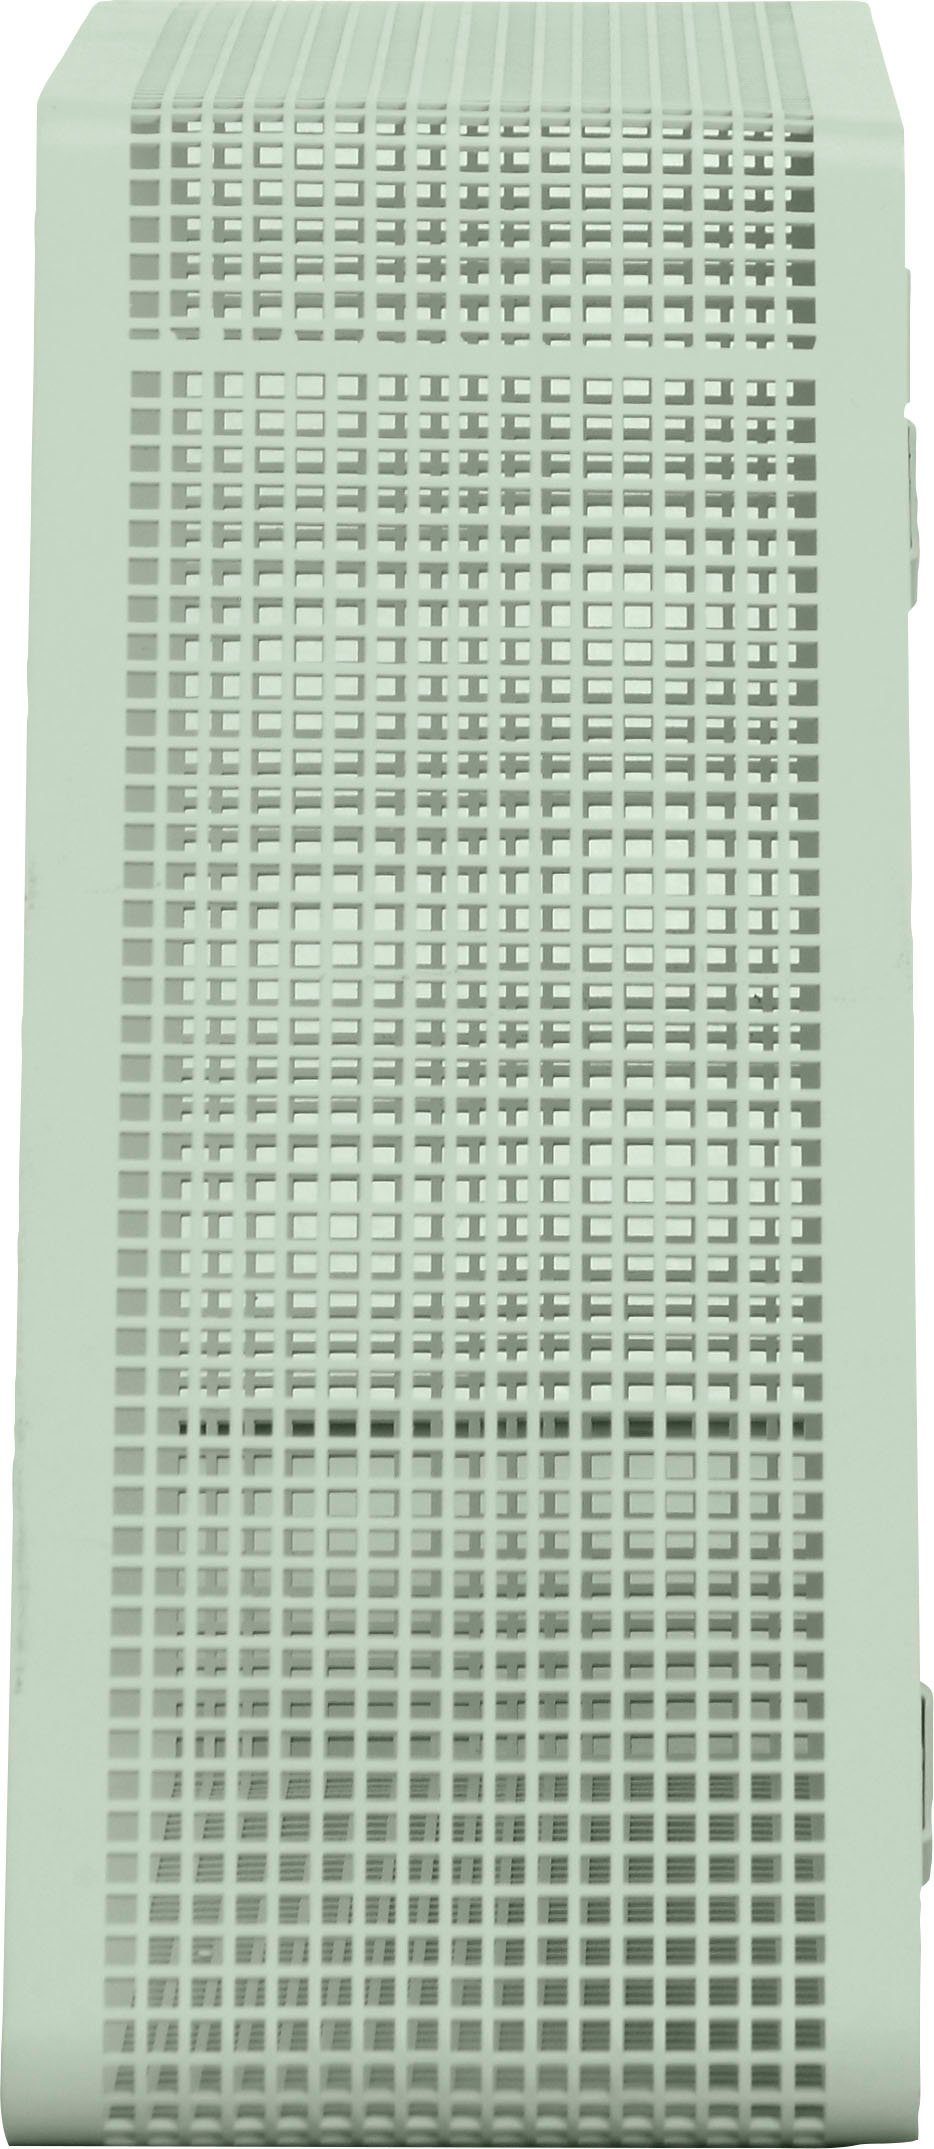 Eine große Auswahl an Artikeln andas Regal Crossby, mit Netzmuster, grün 56,8 Design cm, Breite Morten by ca. Georgsen